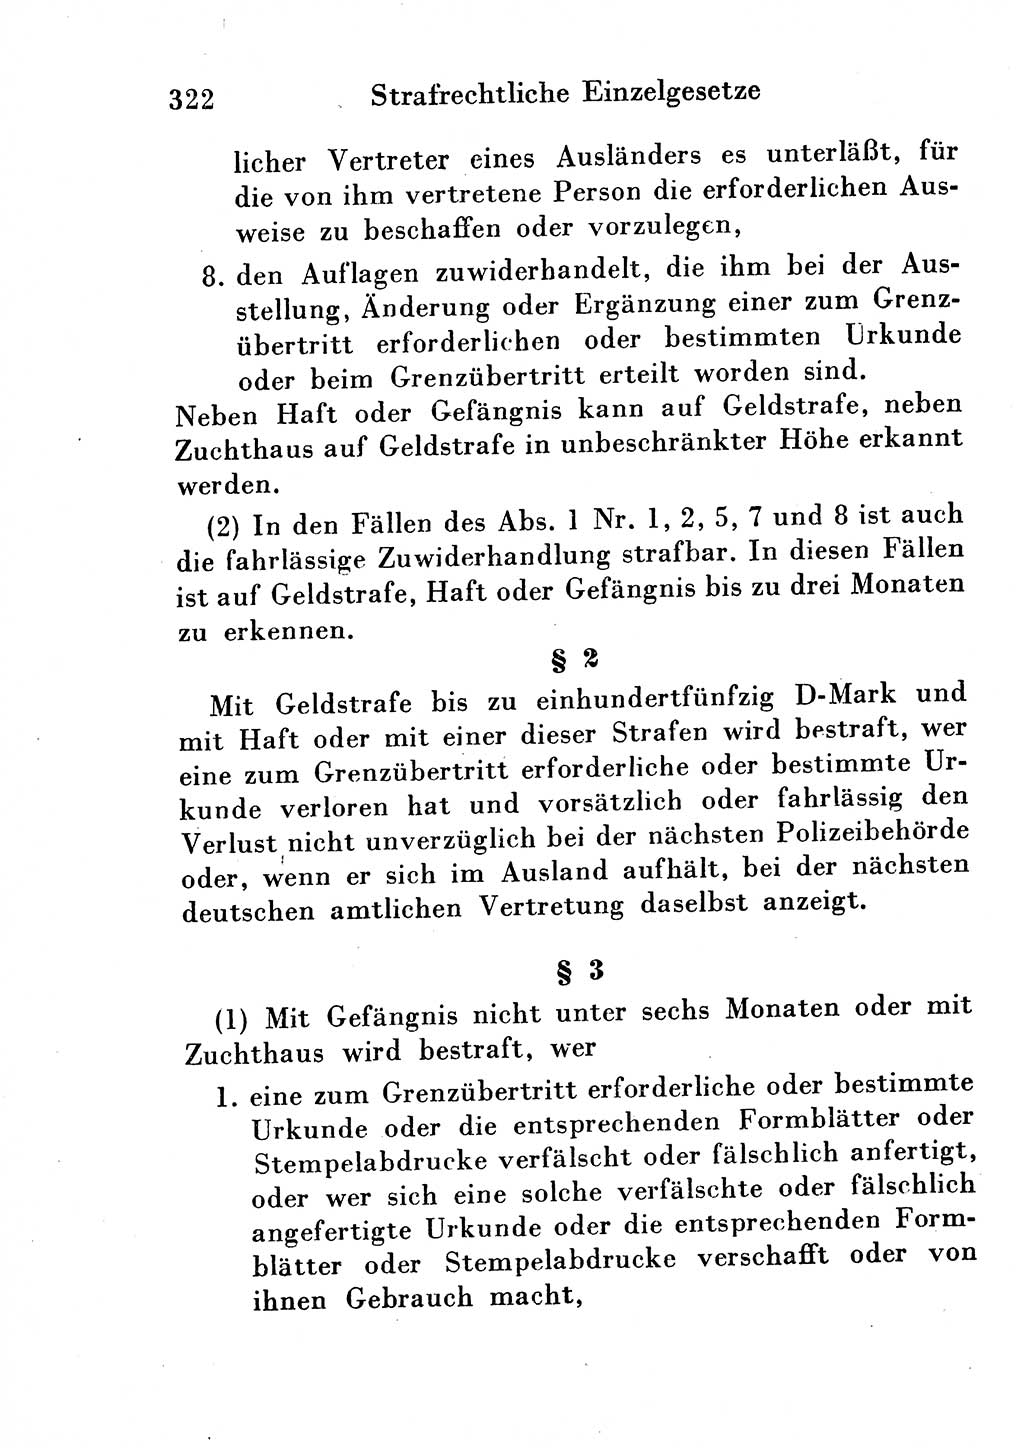 Strafgesetzbuch (StGB) und andere Strafgesetze [Deutsche Demokratische Republik (DDR)] 1954, Seite 322 (StGB Strafges. DDR 1954, S. 322)